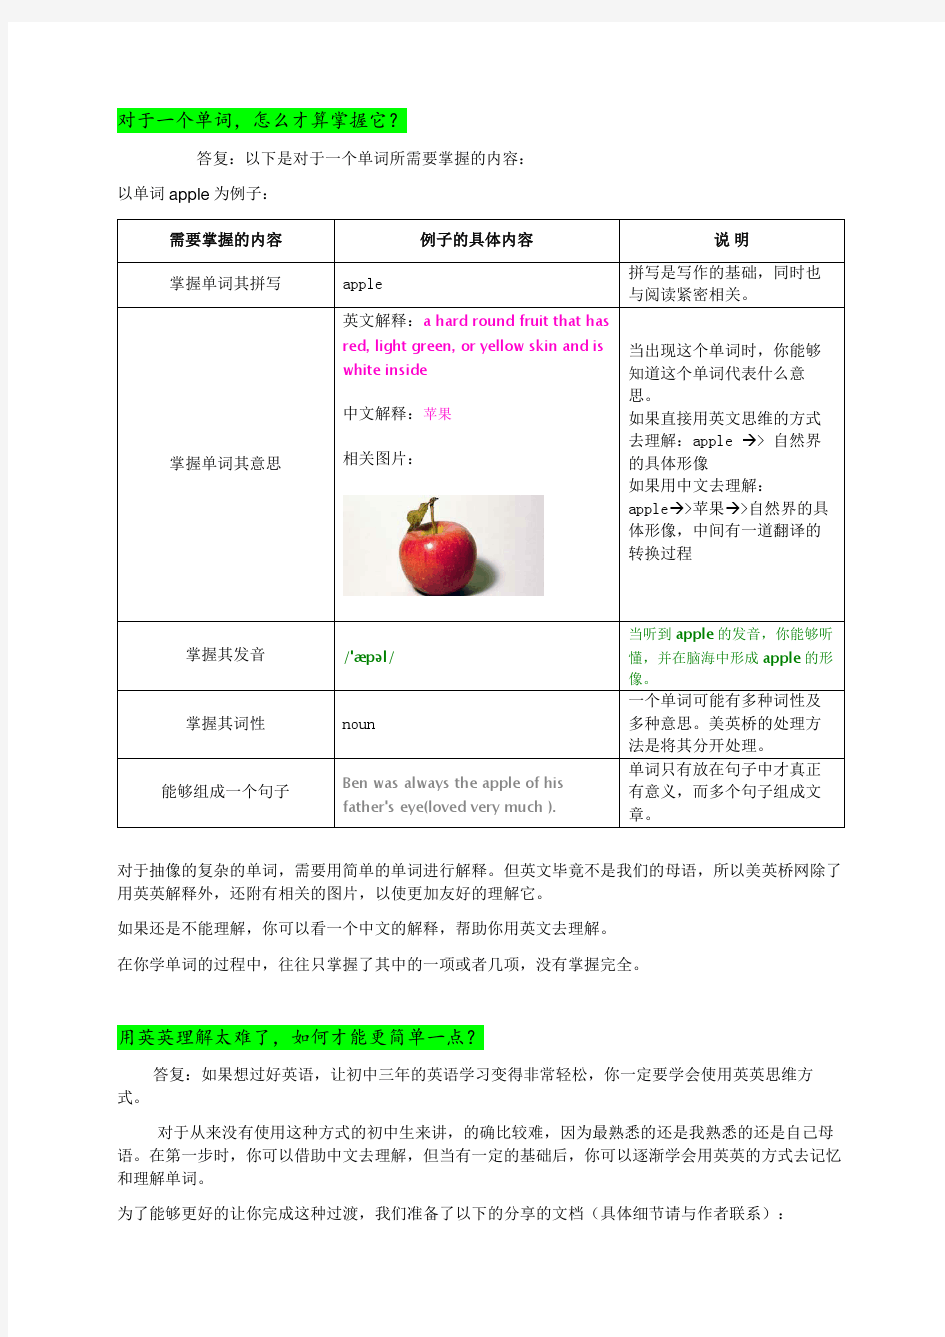 上海新版中考大纲词汇表(2015全英英解释, 阶梯词汇版)